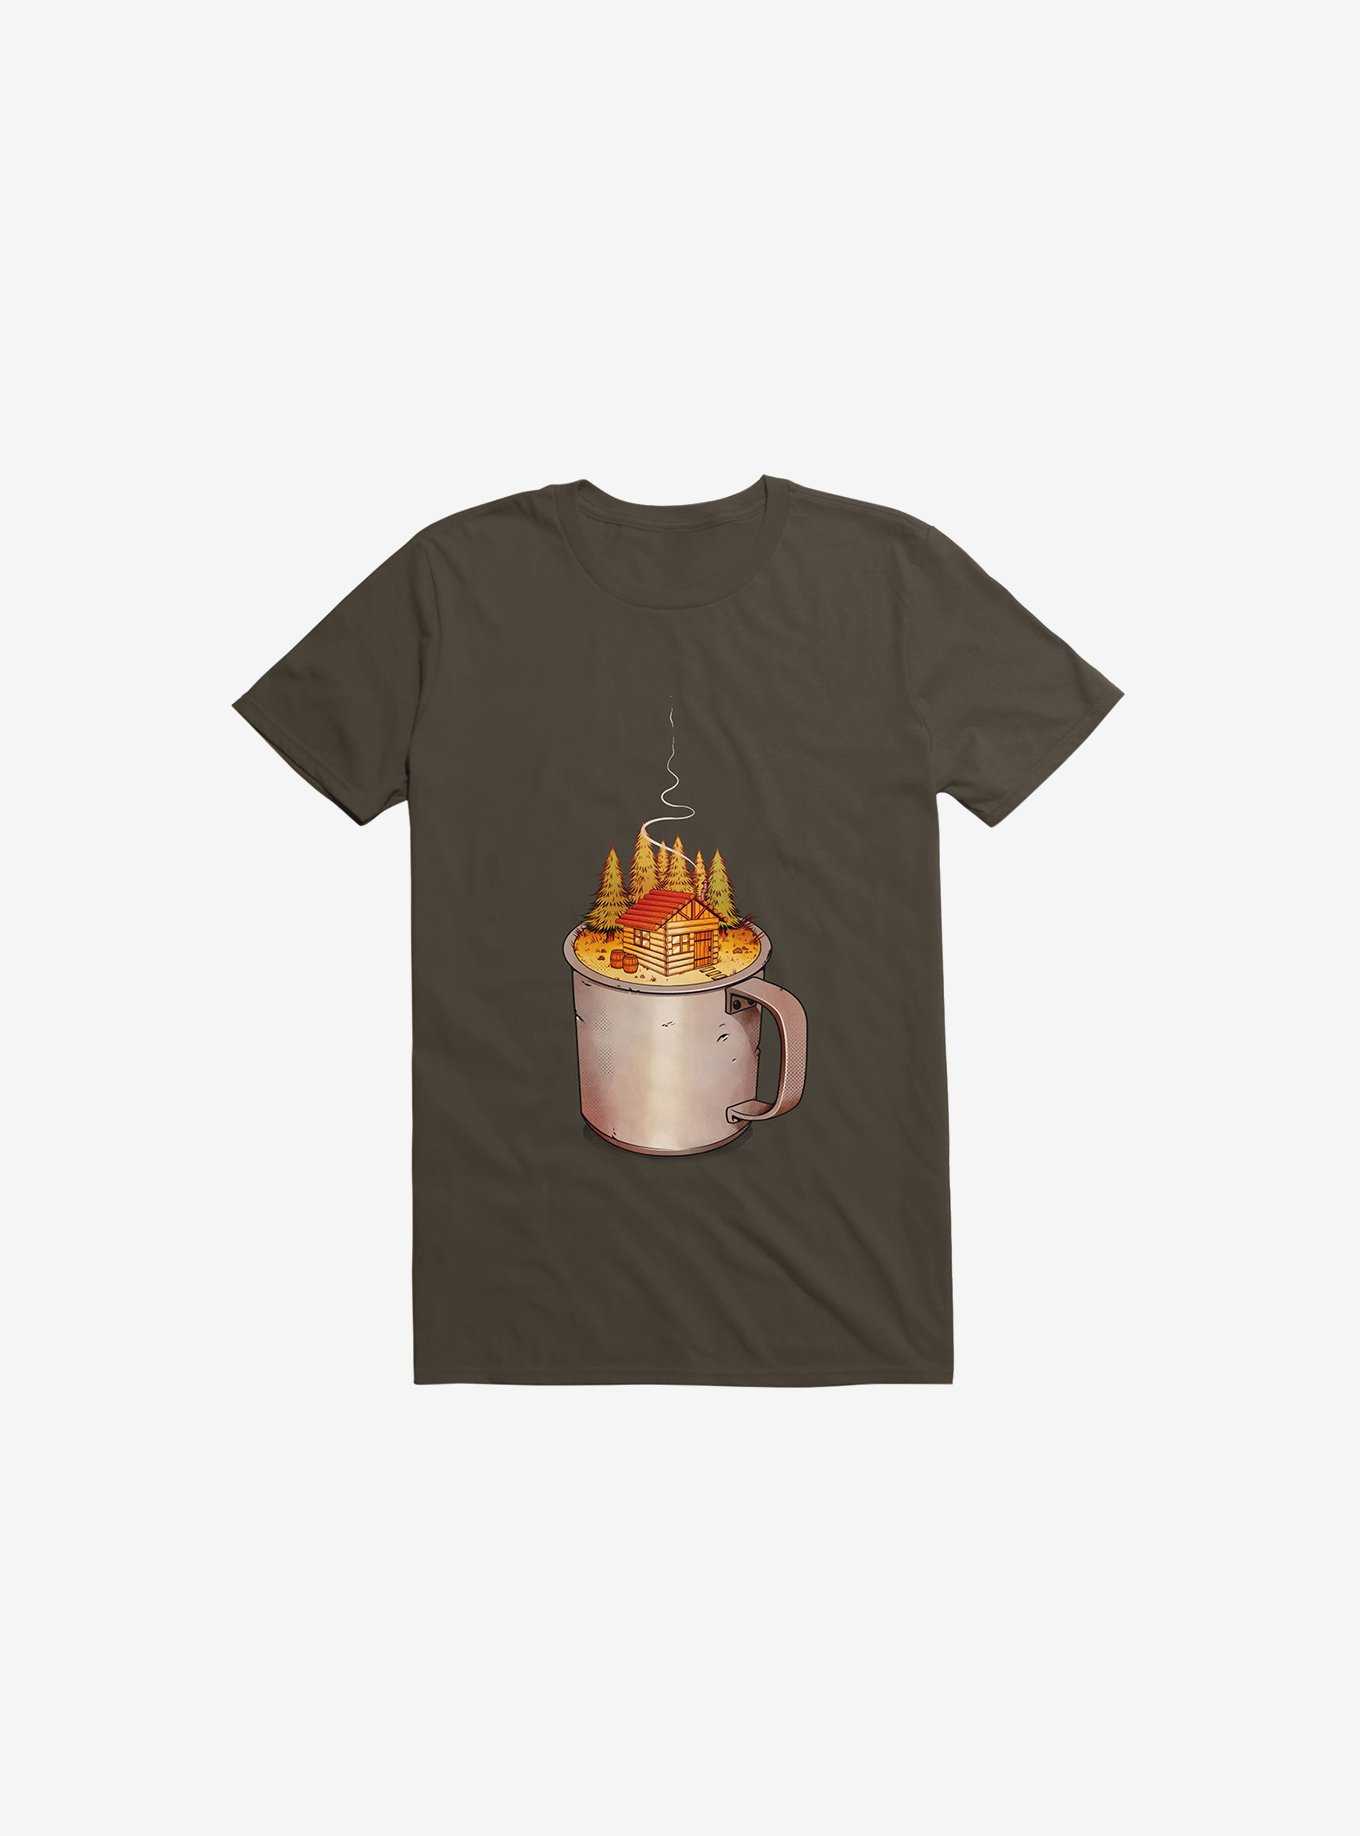 My Camp Of Tea Brown T-Shirt, , hi-res